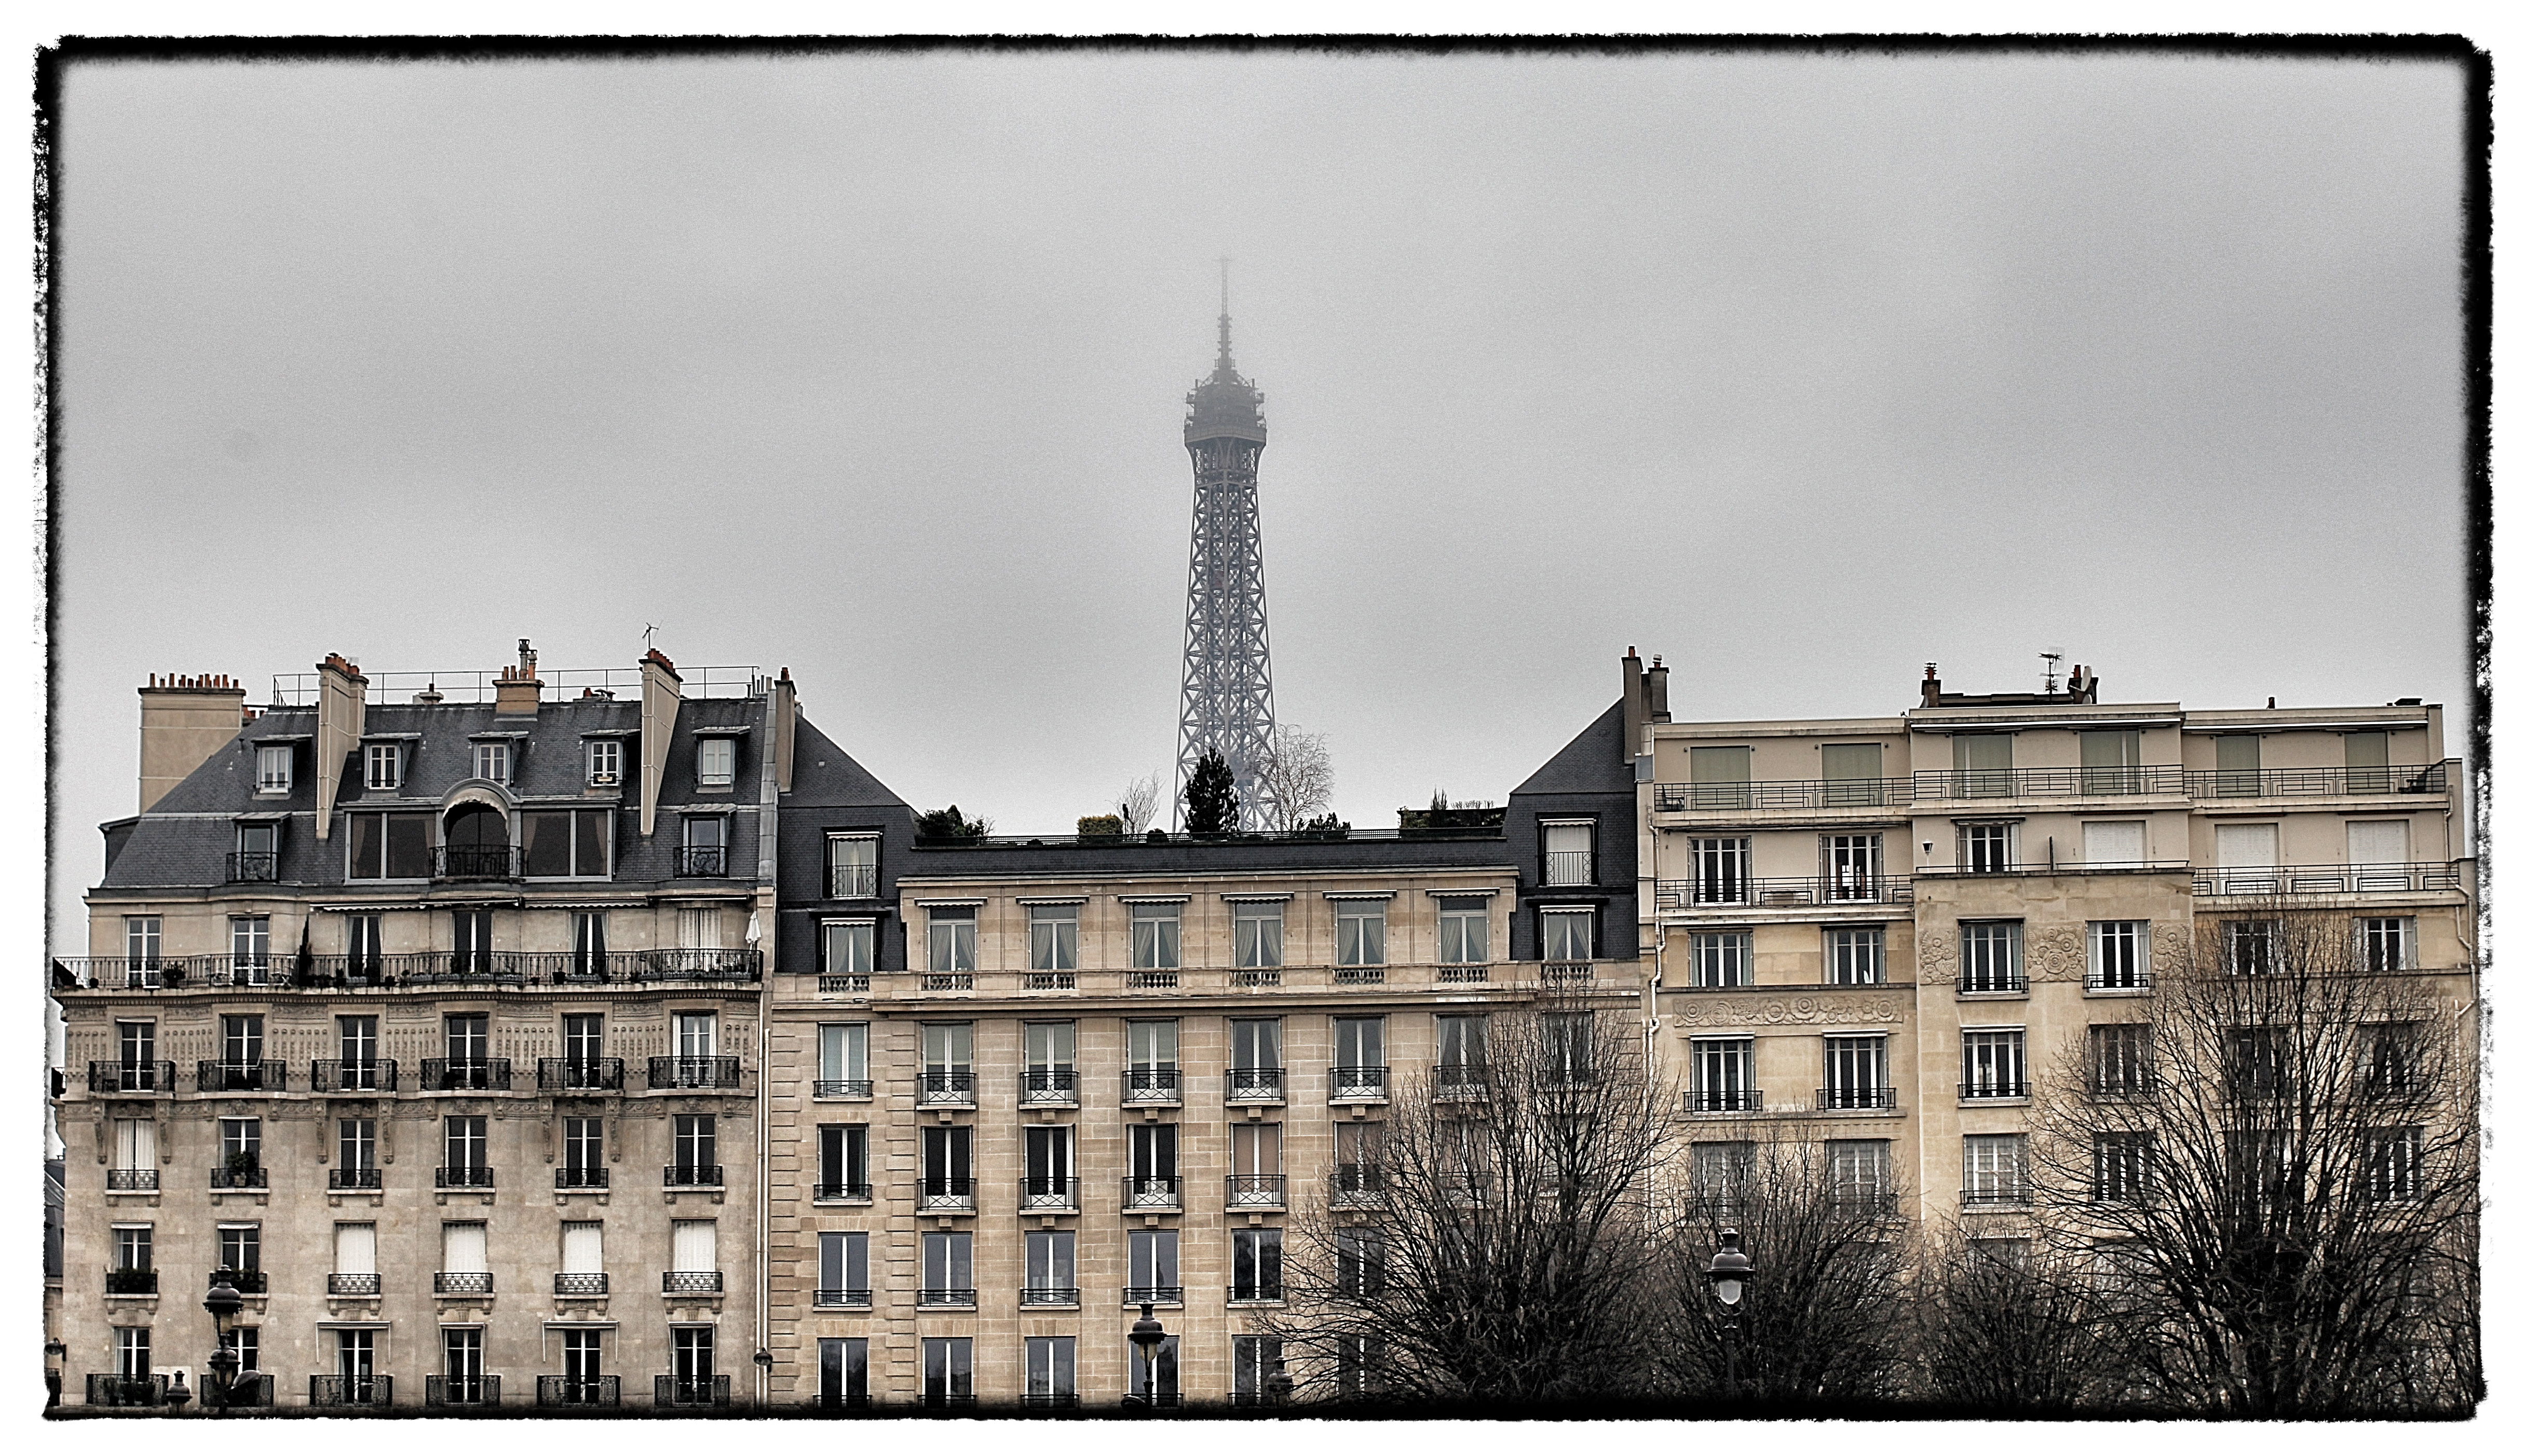 Best Place To Stay, conseil immobilier à paris